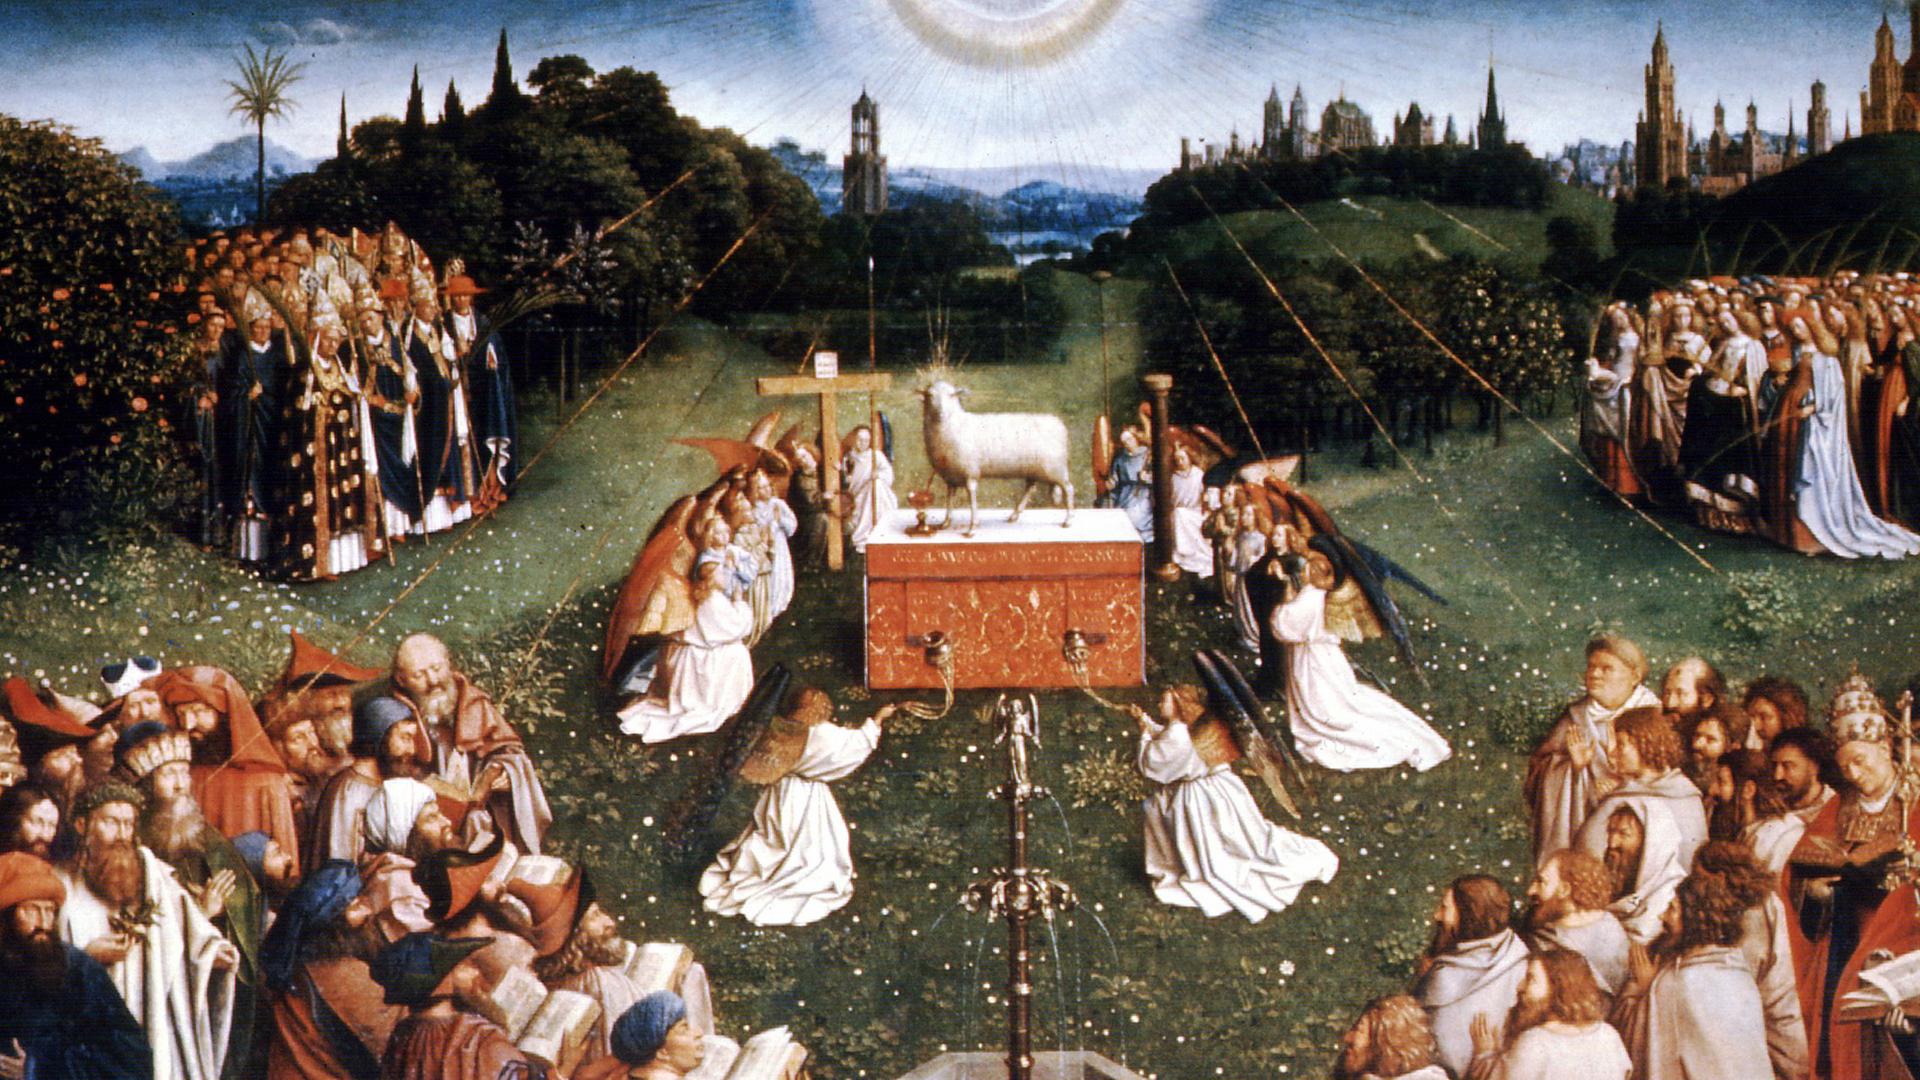 Der Mittelaltar im Genter Altar von Hubert und Jan van Eyck (Ausschnitt) zeigt die "Anbetung des Lammes" als Symbol für das Paradies in einer Frühlingslandschaft. Das Gemälde entstand um 1432.